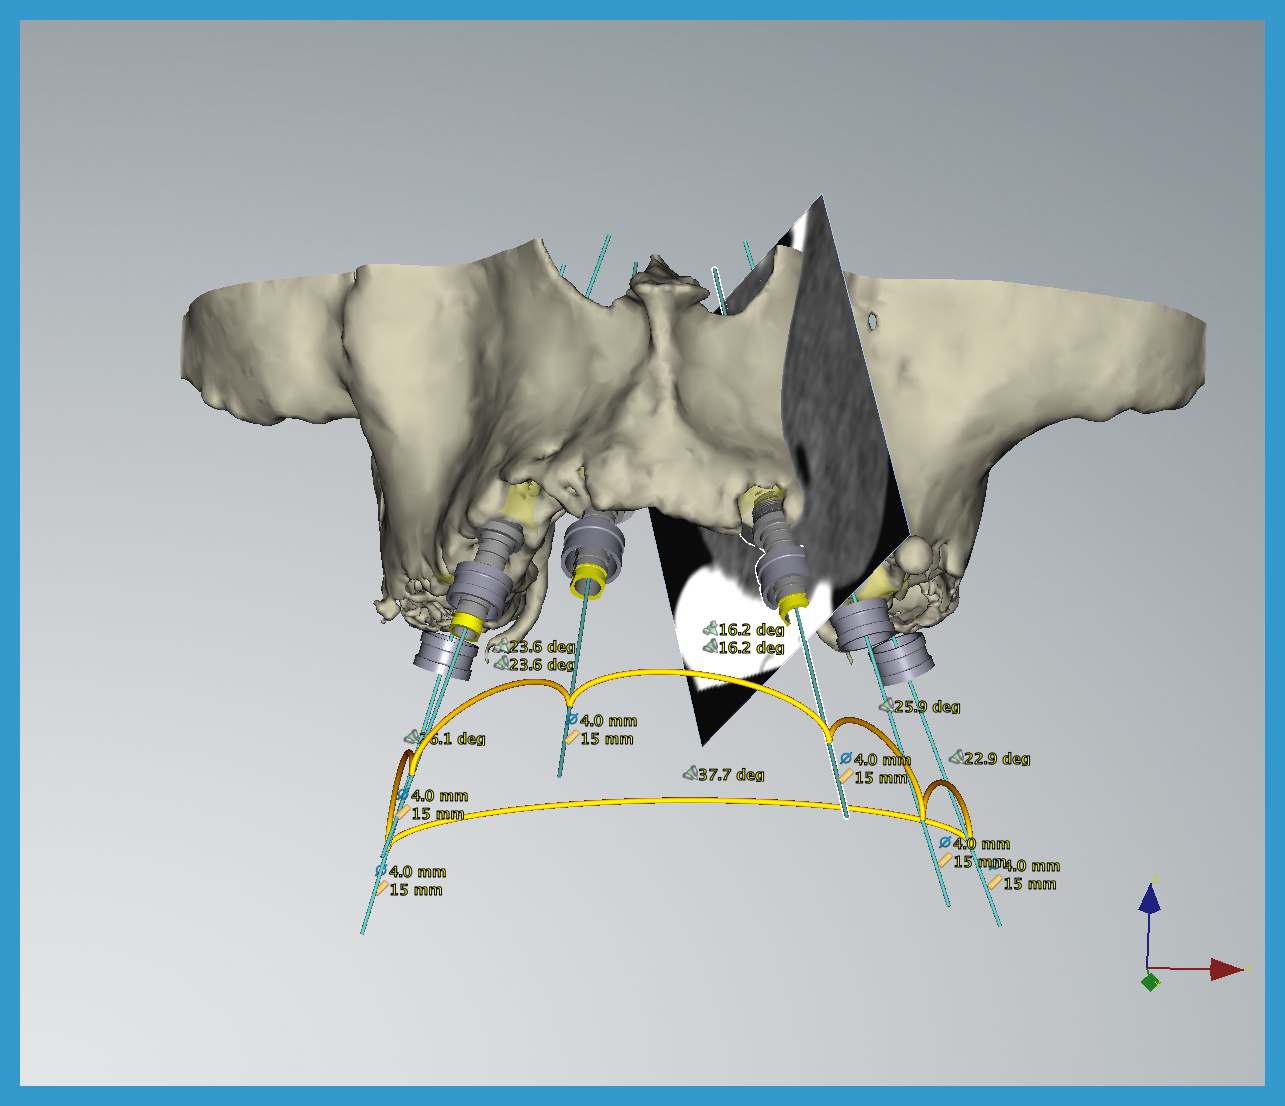 3 vengono individuati le posizioni ottimali per gli impianti e inseriti nel volume di osso evidenziato precedentemente nella TAC